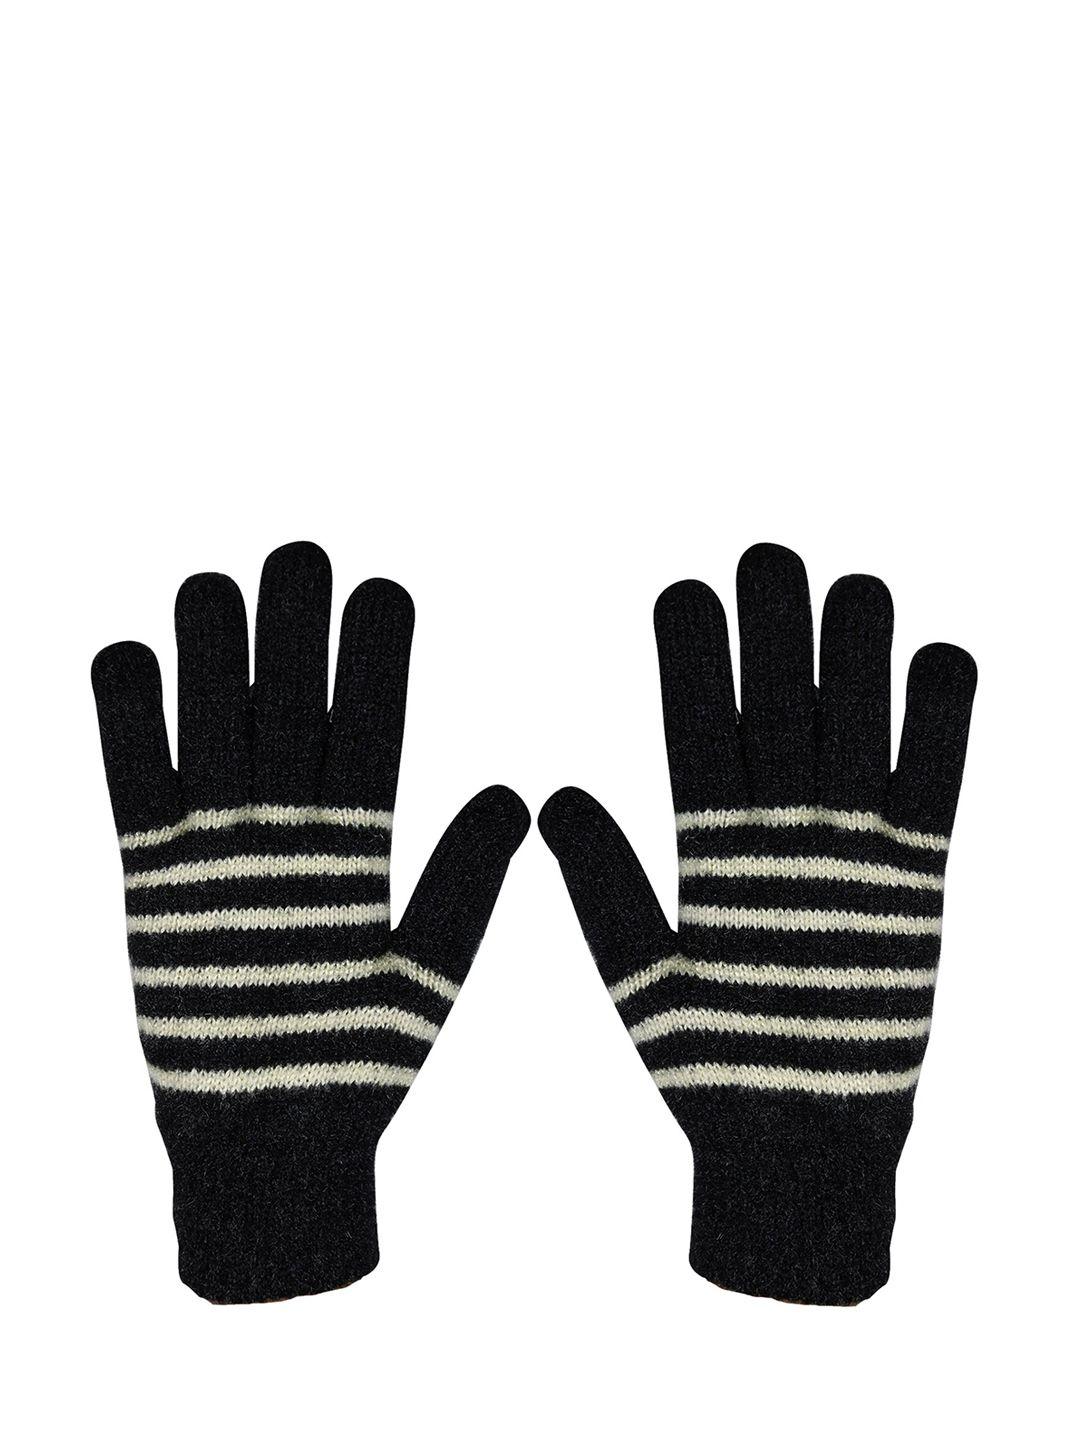 baesd unisex striped woolen winter hand gloves